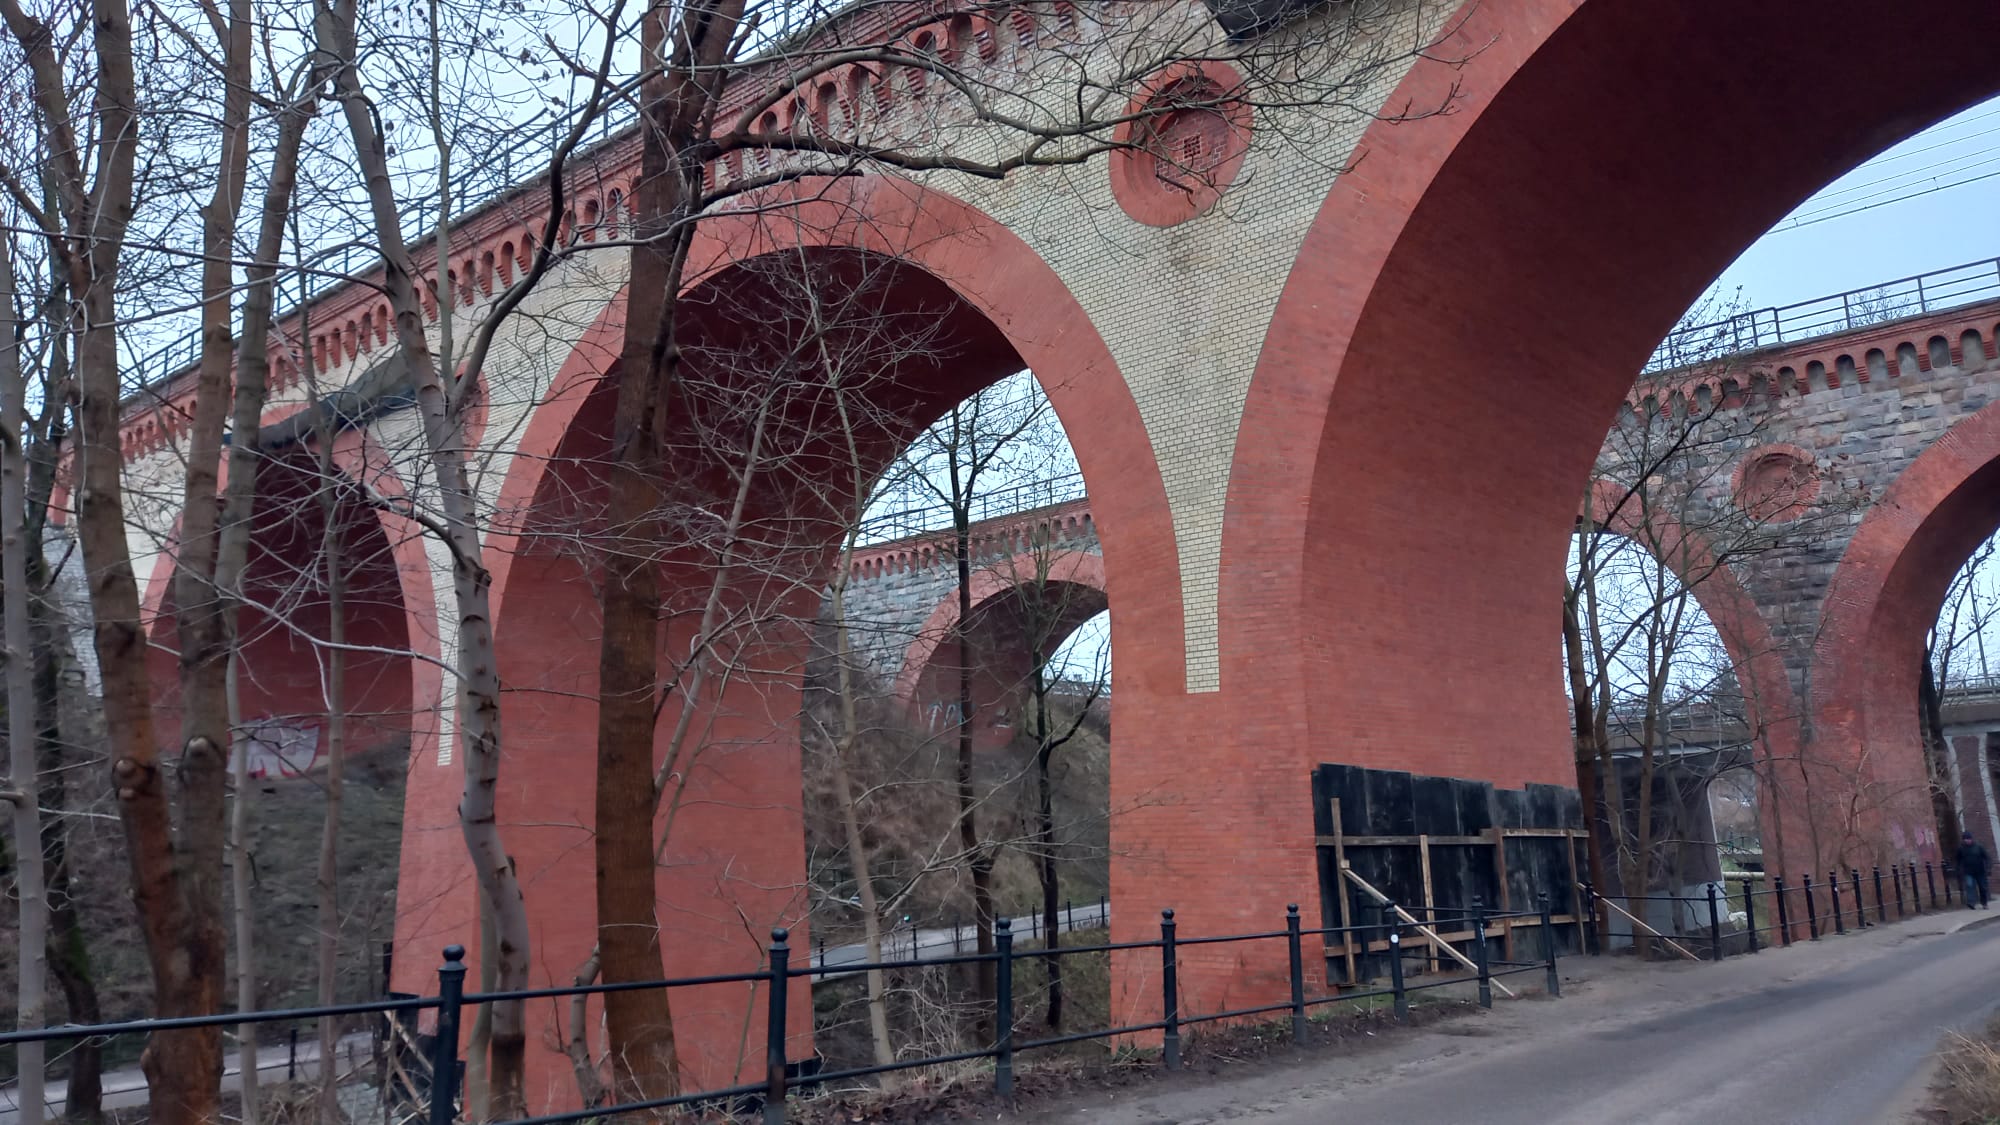 Tajemnicze obiekty przy słynnych olsztyńskich wiaduktach remont Olsztyn, Wiadomości, zShowcase